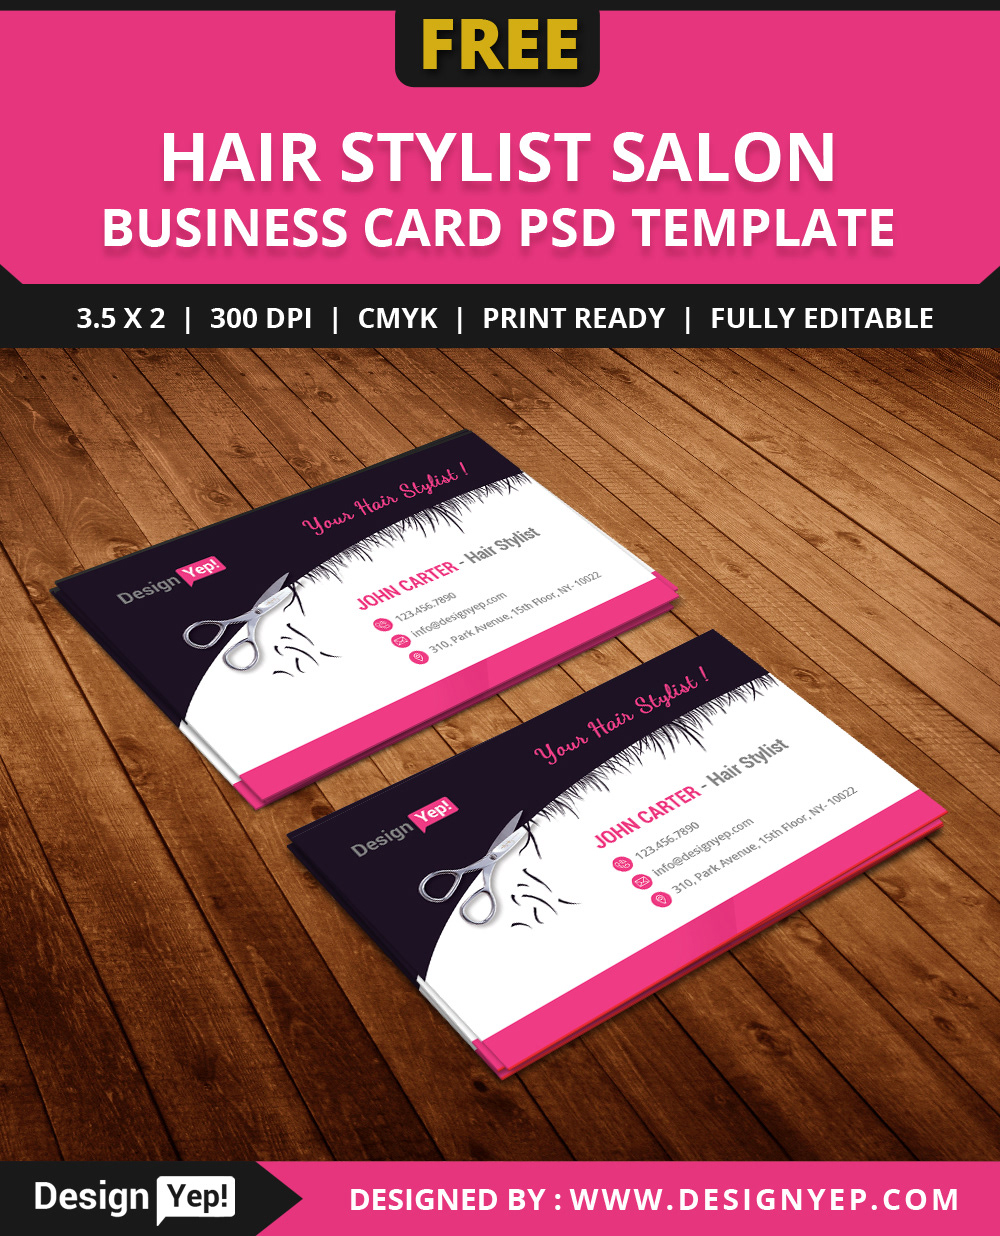 vistaprint hair stylist business cards 1